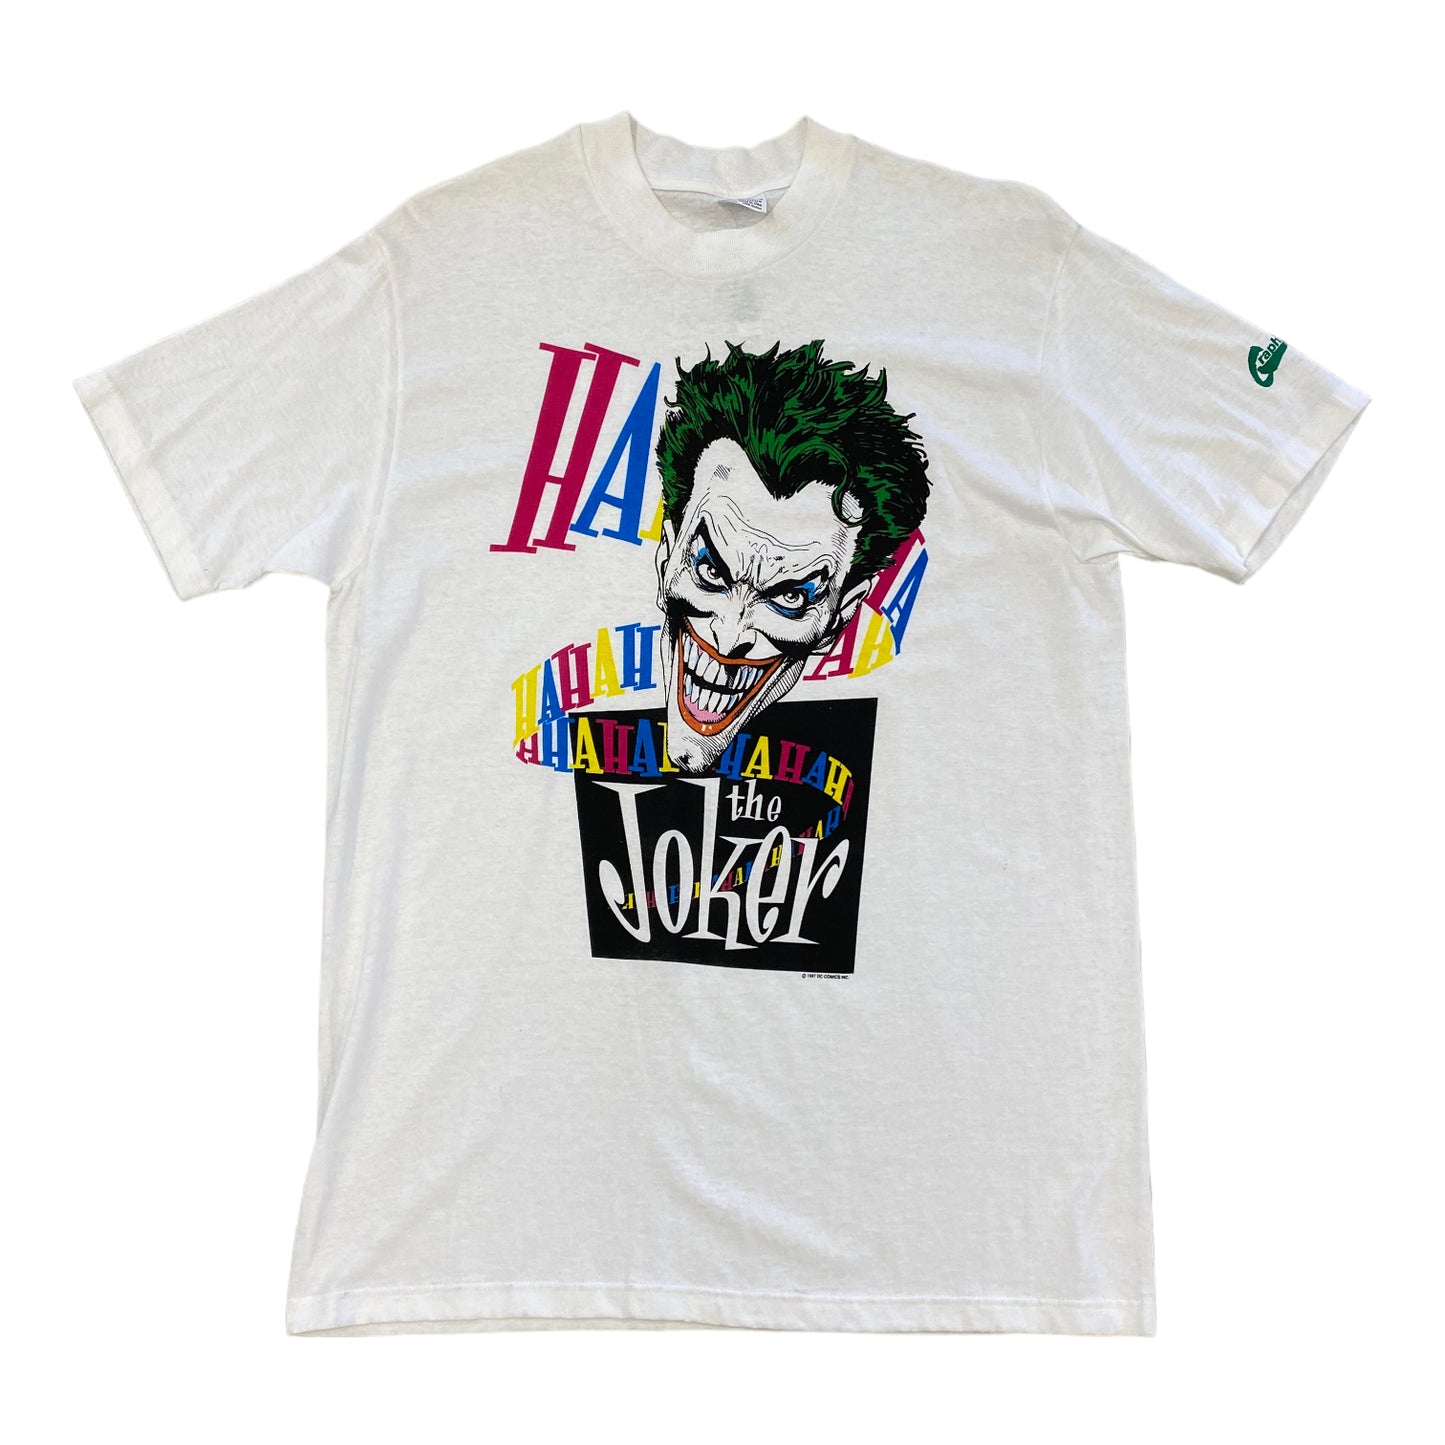 1987 DC Comics The Joker “Ha Ha Ha Ha” Vintage T-shirt